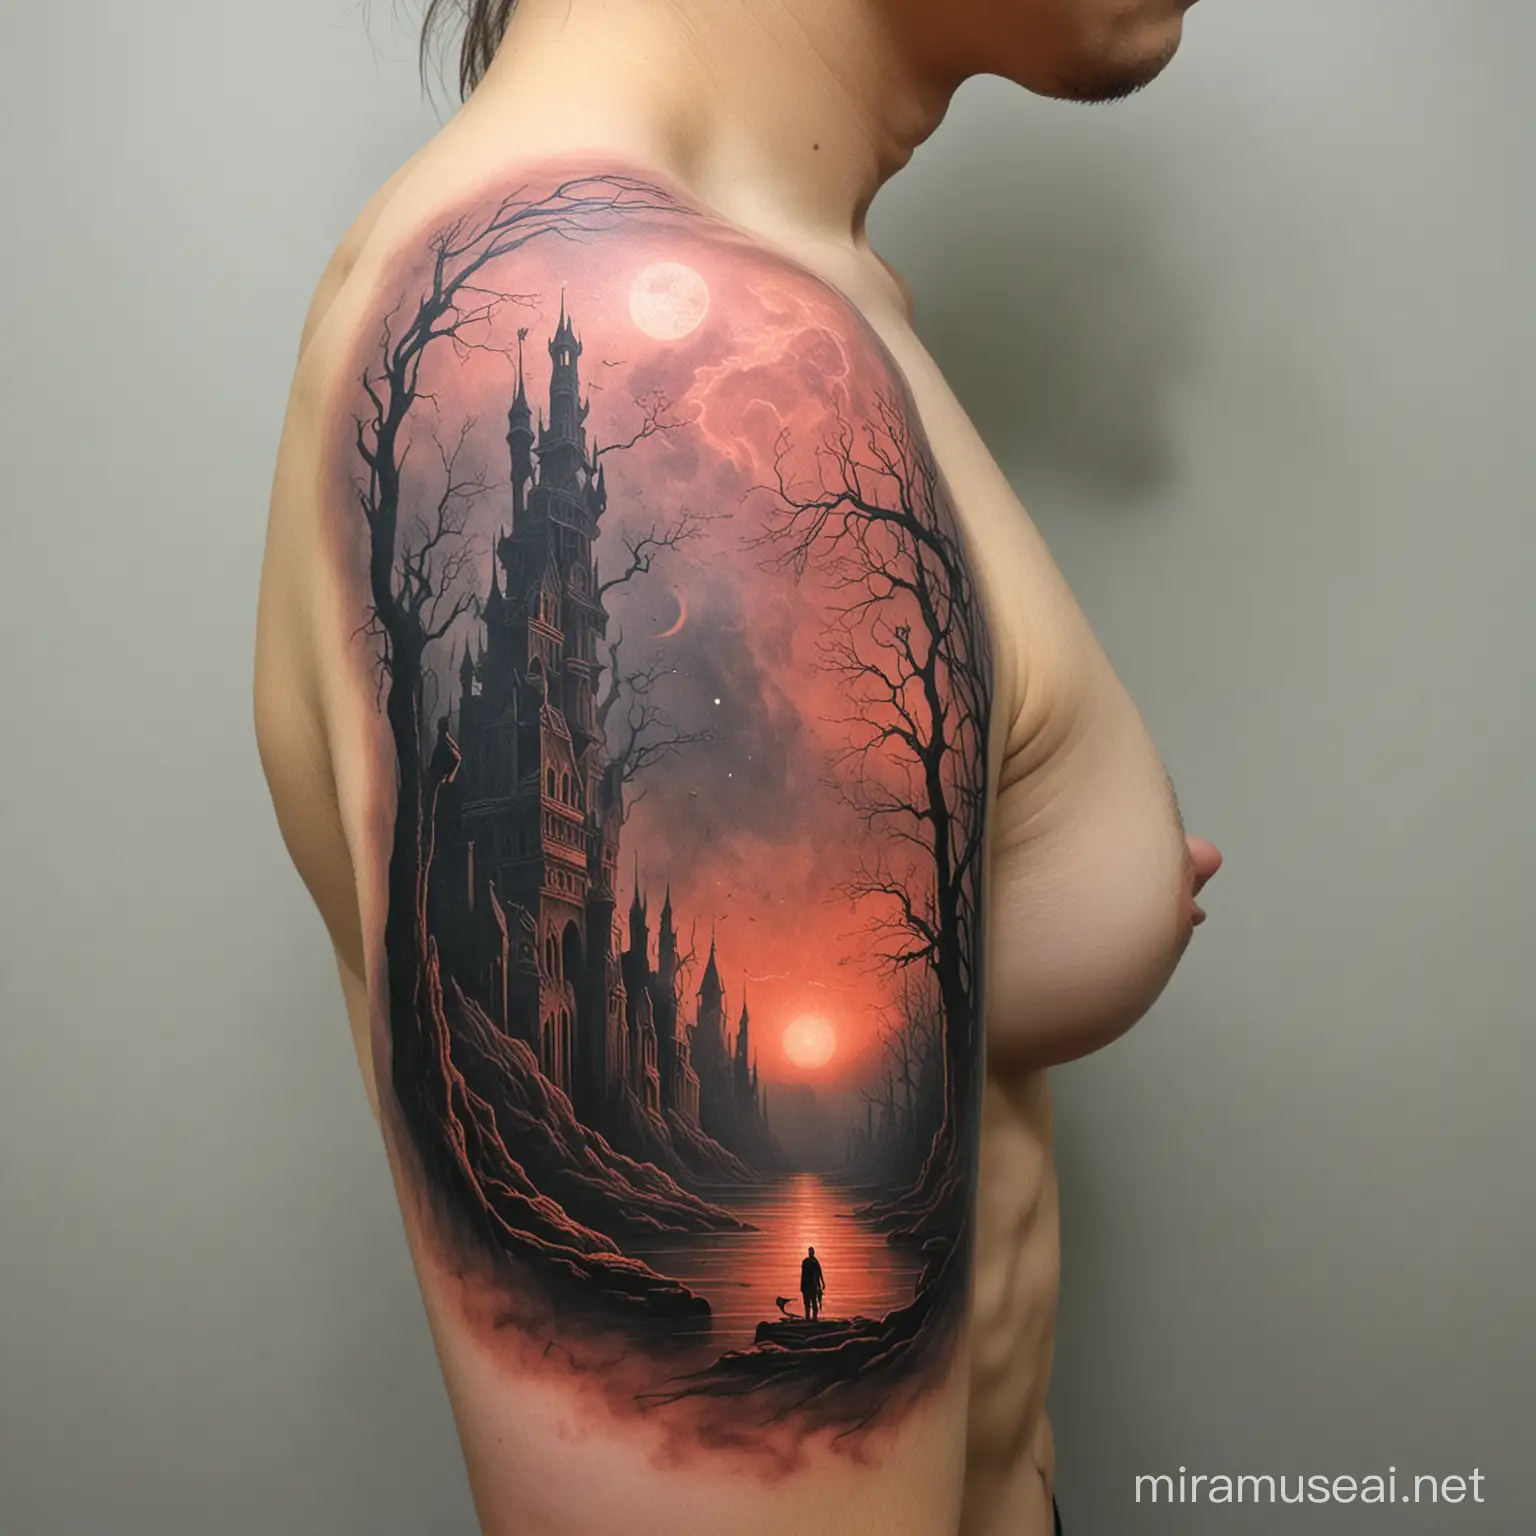 Dark Surreal Tattoo Inspired by Zdzisaw Beksiski Art